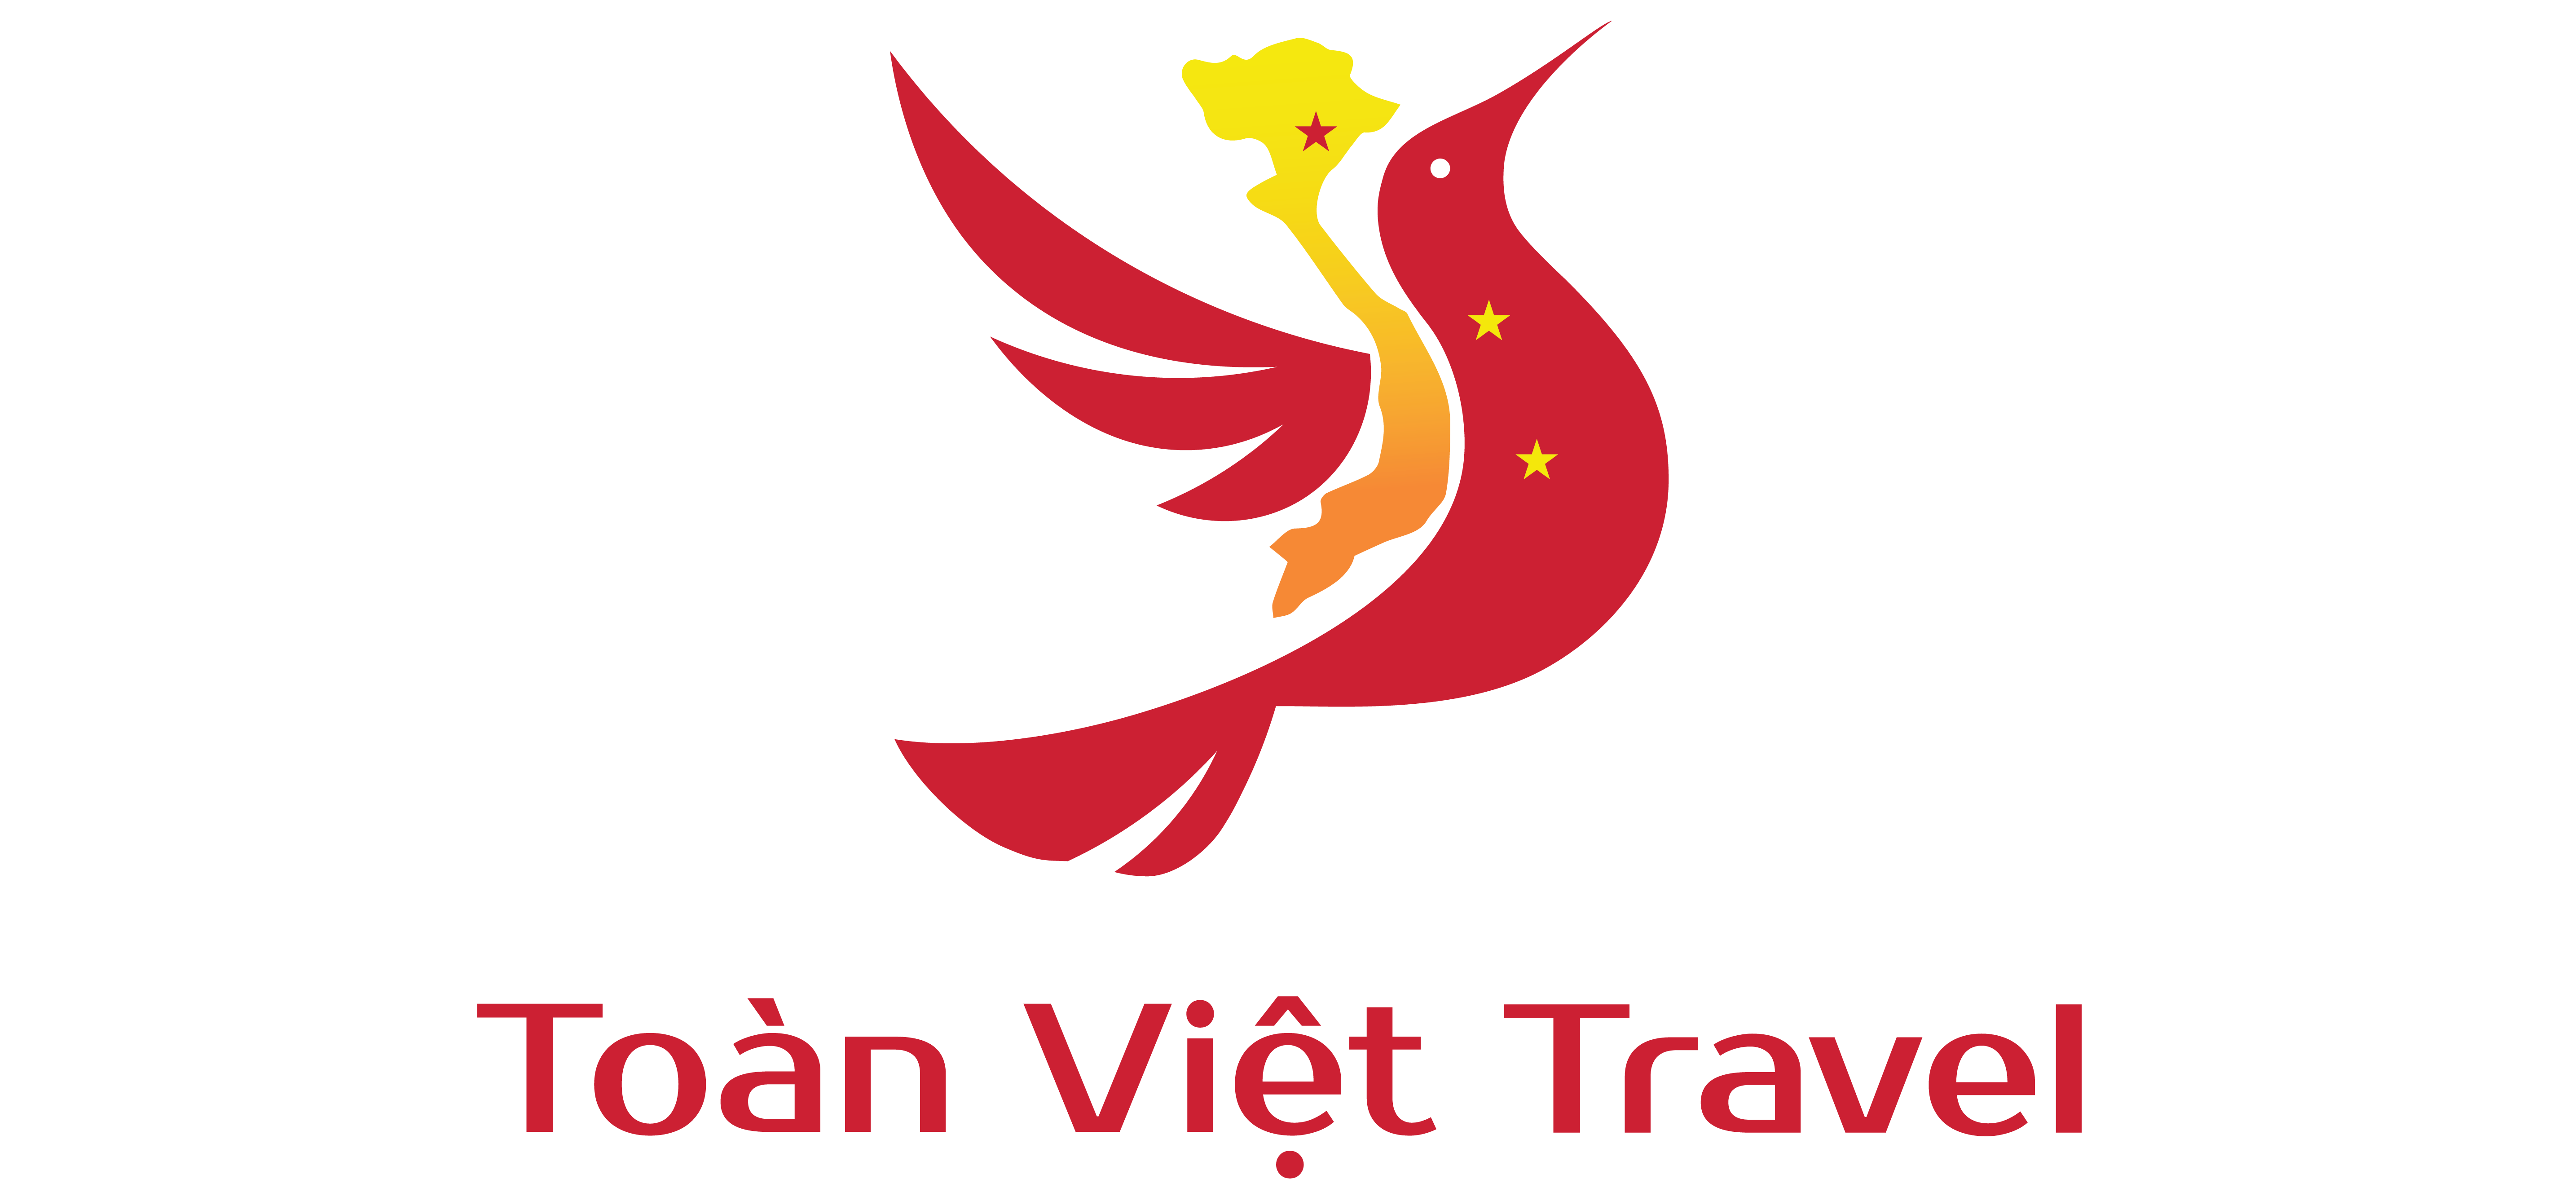 Toàn Việt Travel